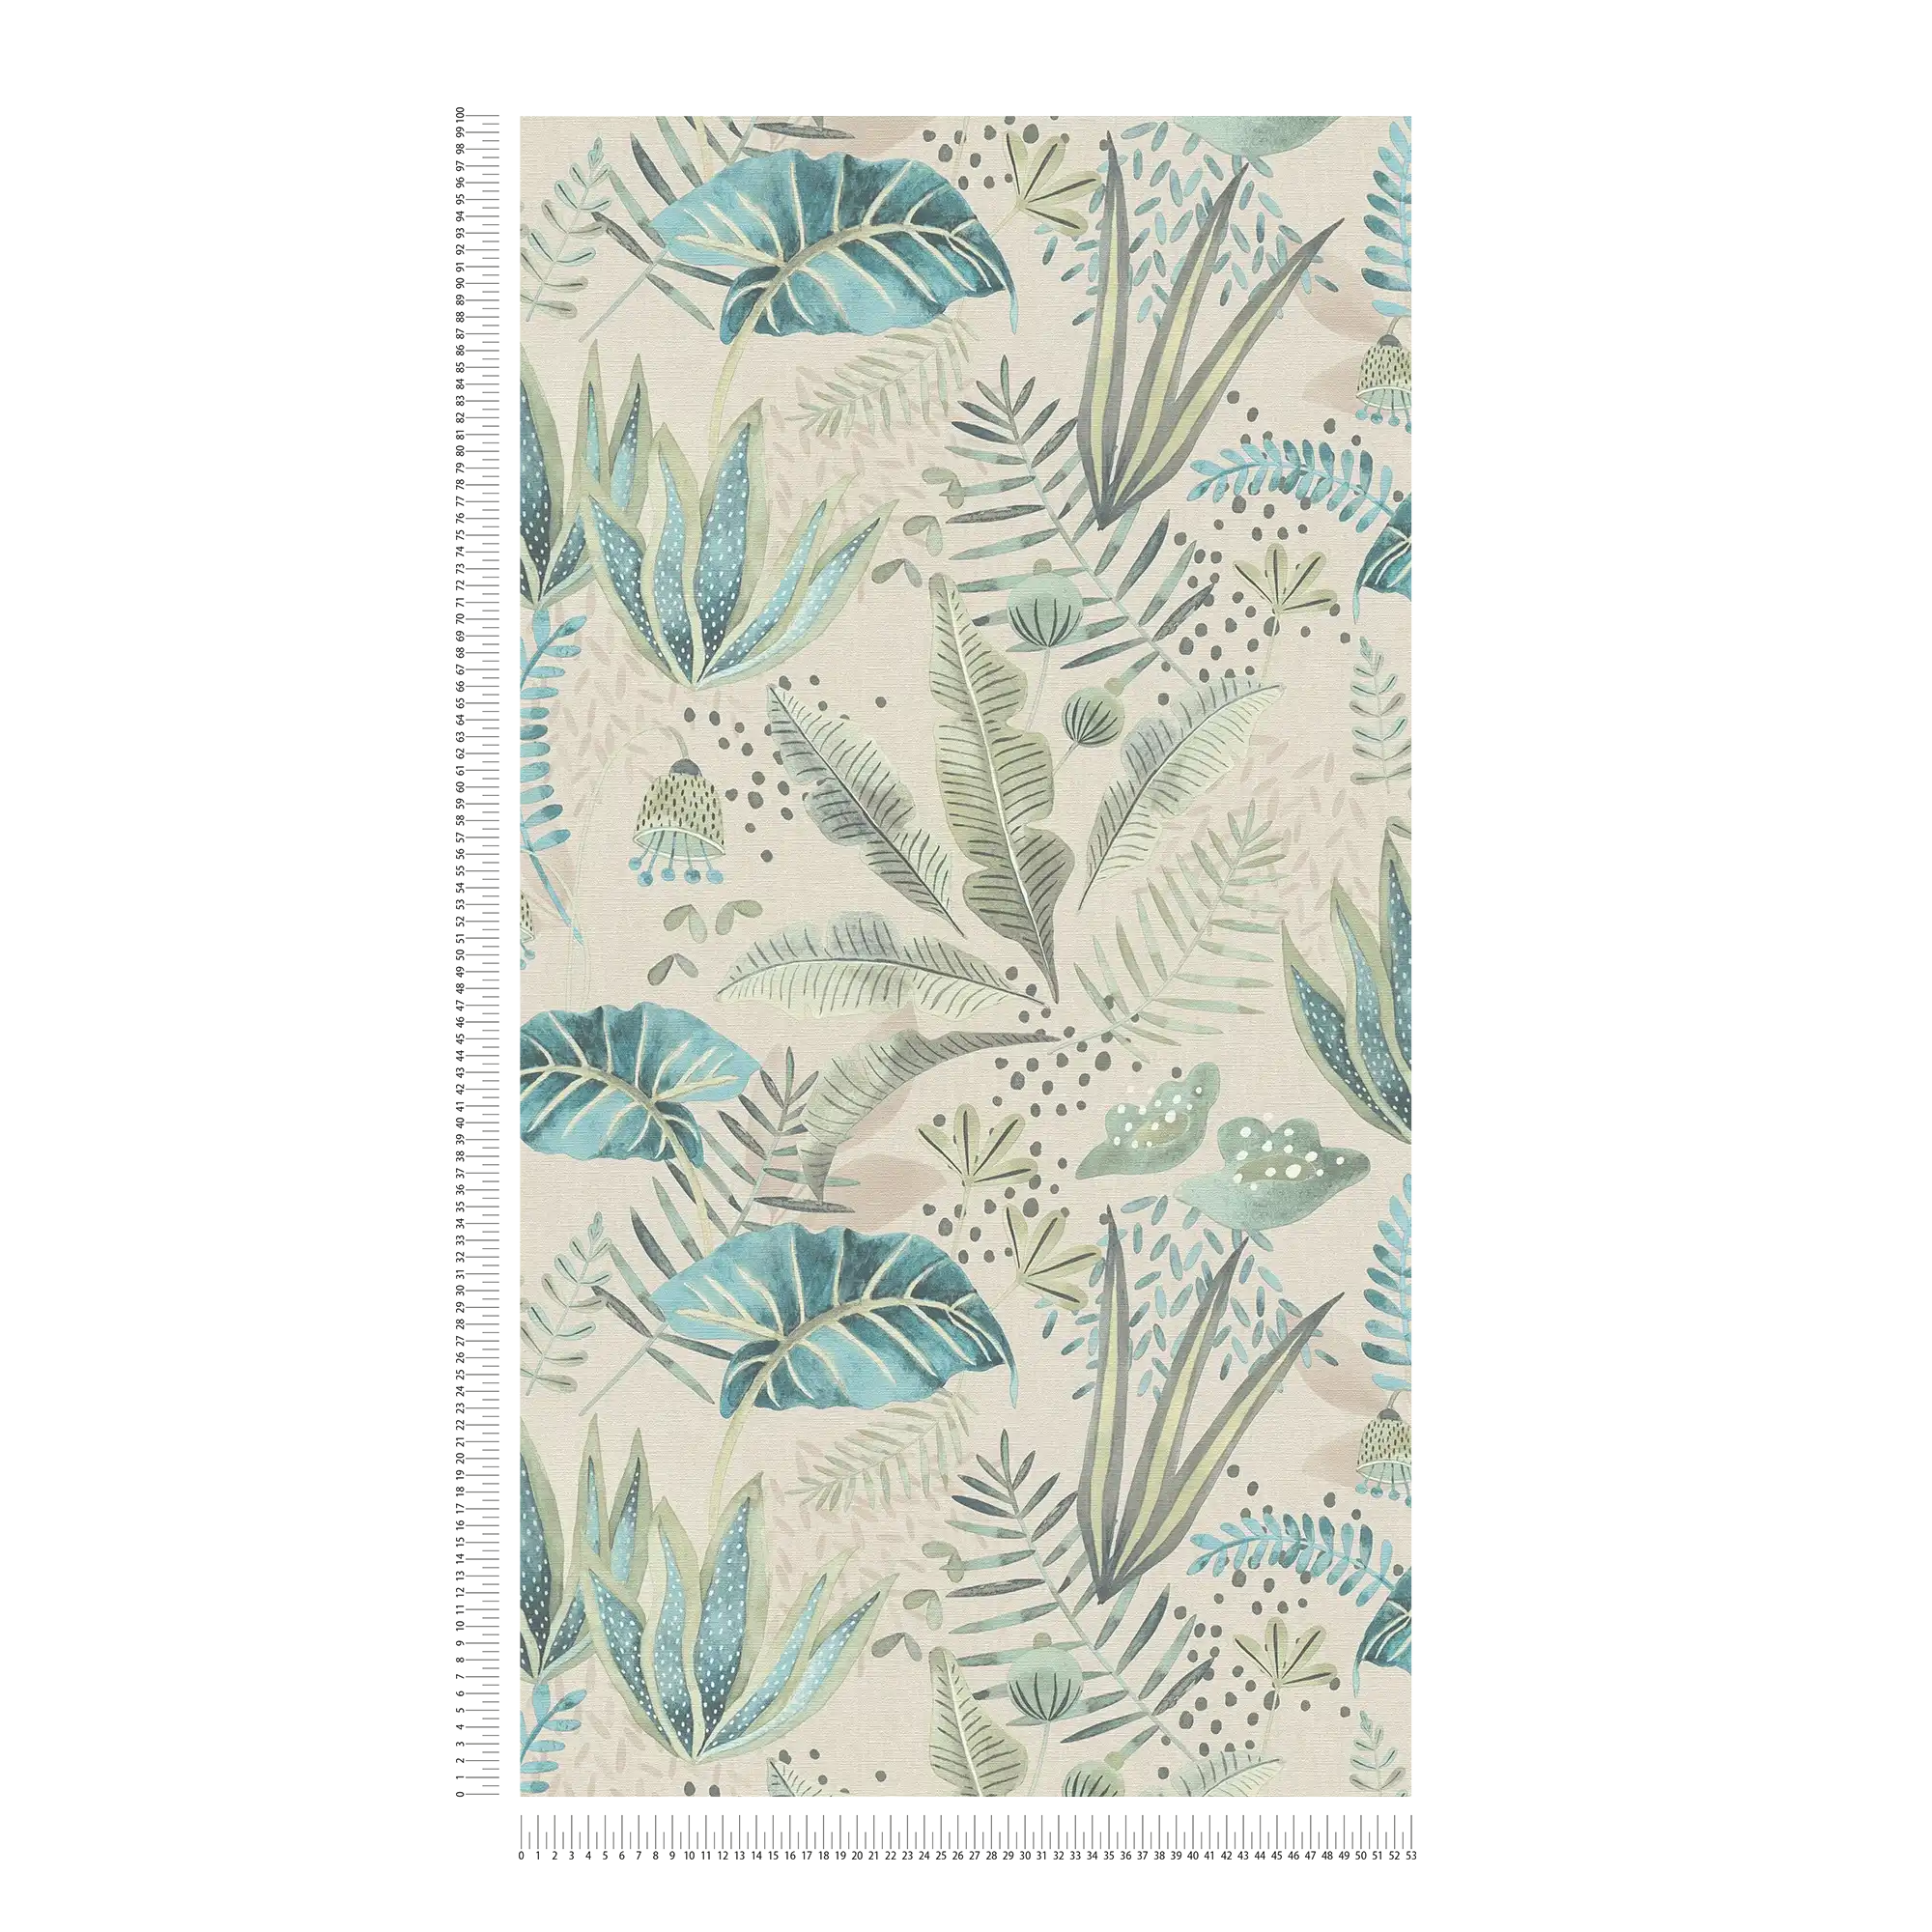             Tapete floral mit gemischten Blättern leicht strukturiert, matt – Beige, Grün, Blau
        